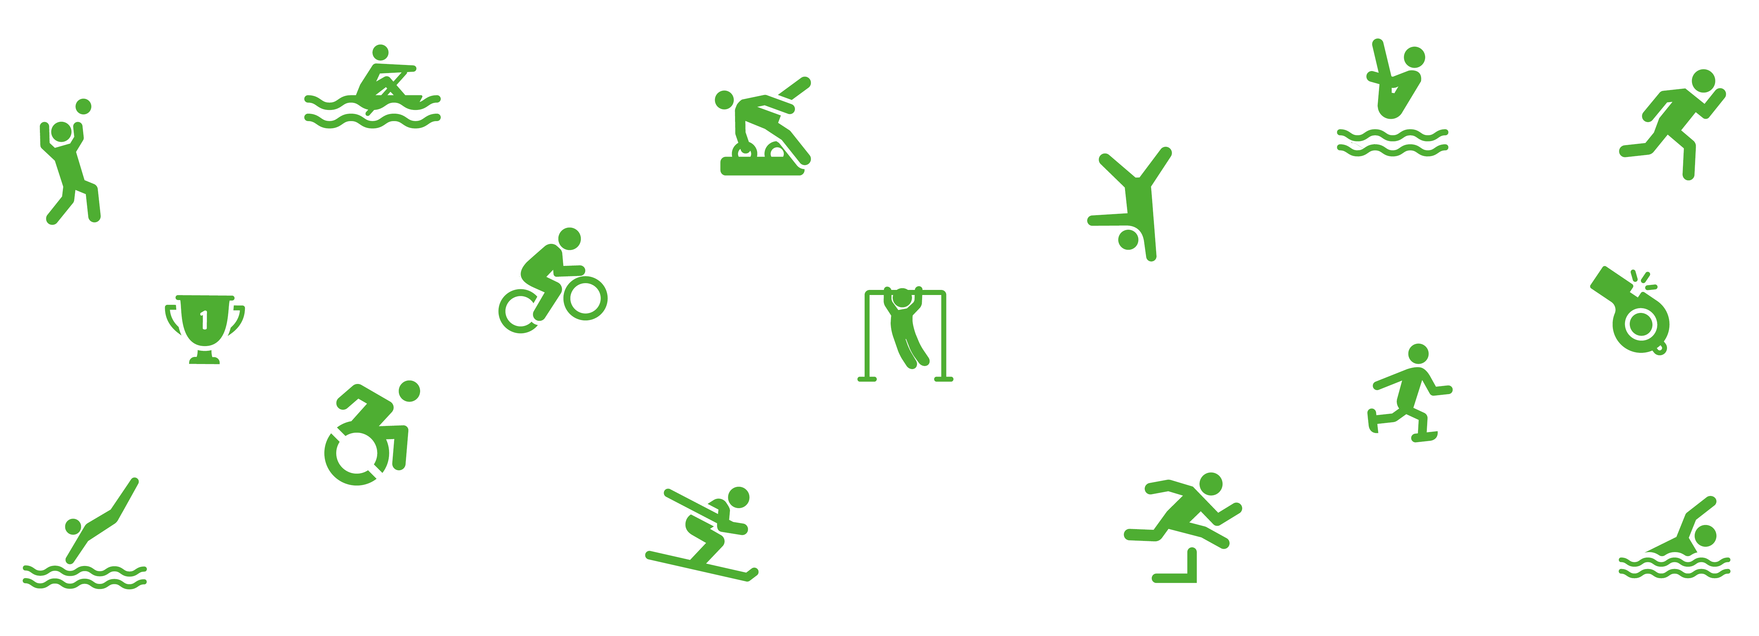 Grafik mit verschiedenen Sportarten-Icons